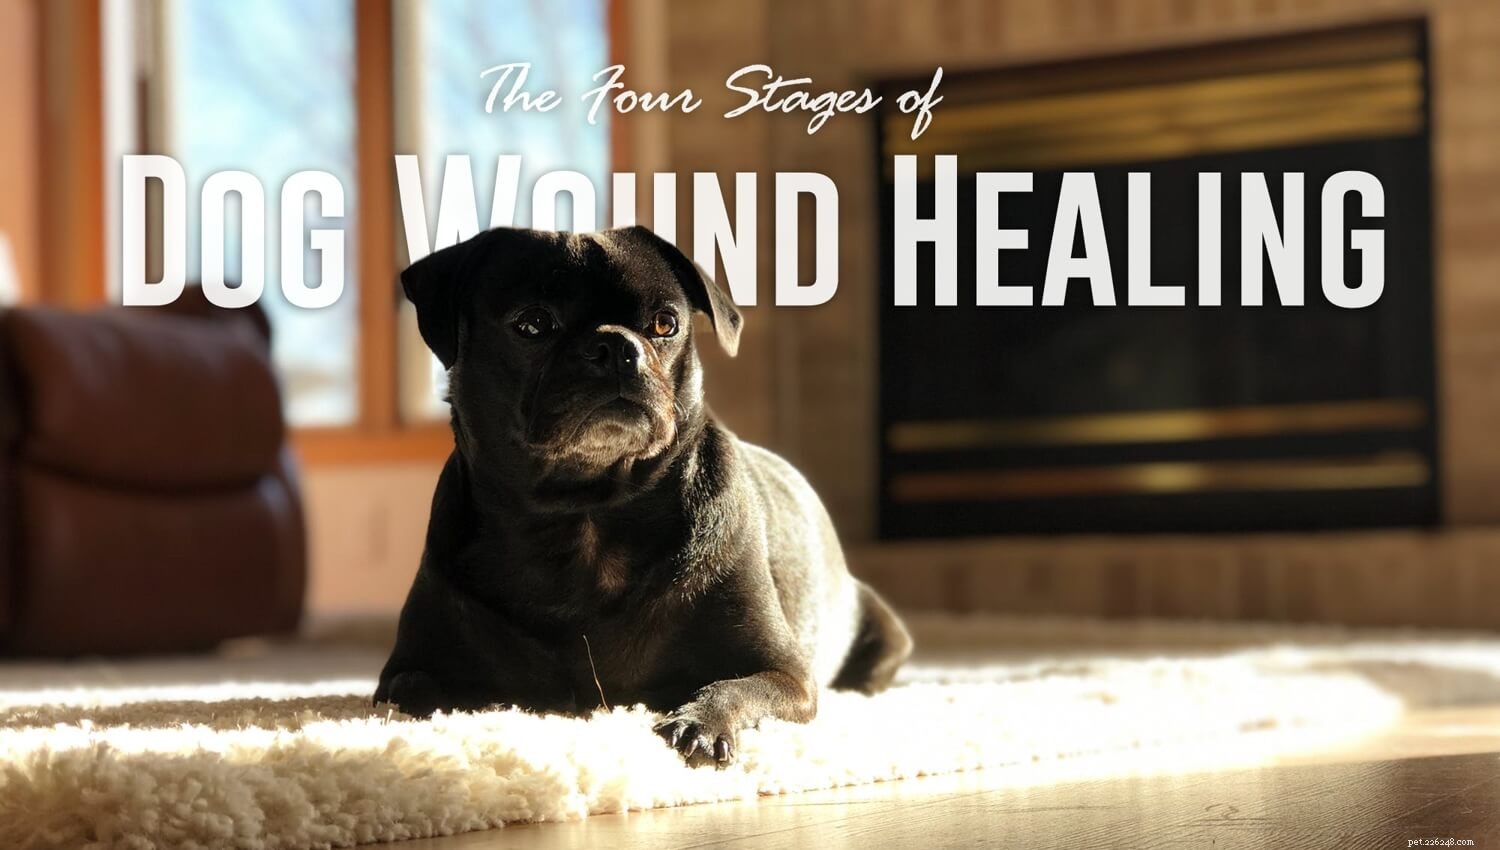 犬の傷の治癒の4つの段階 